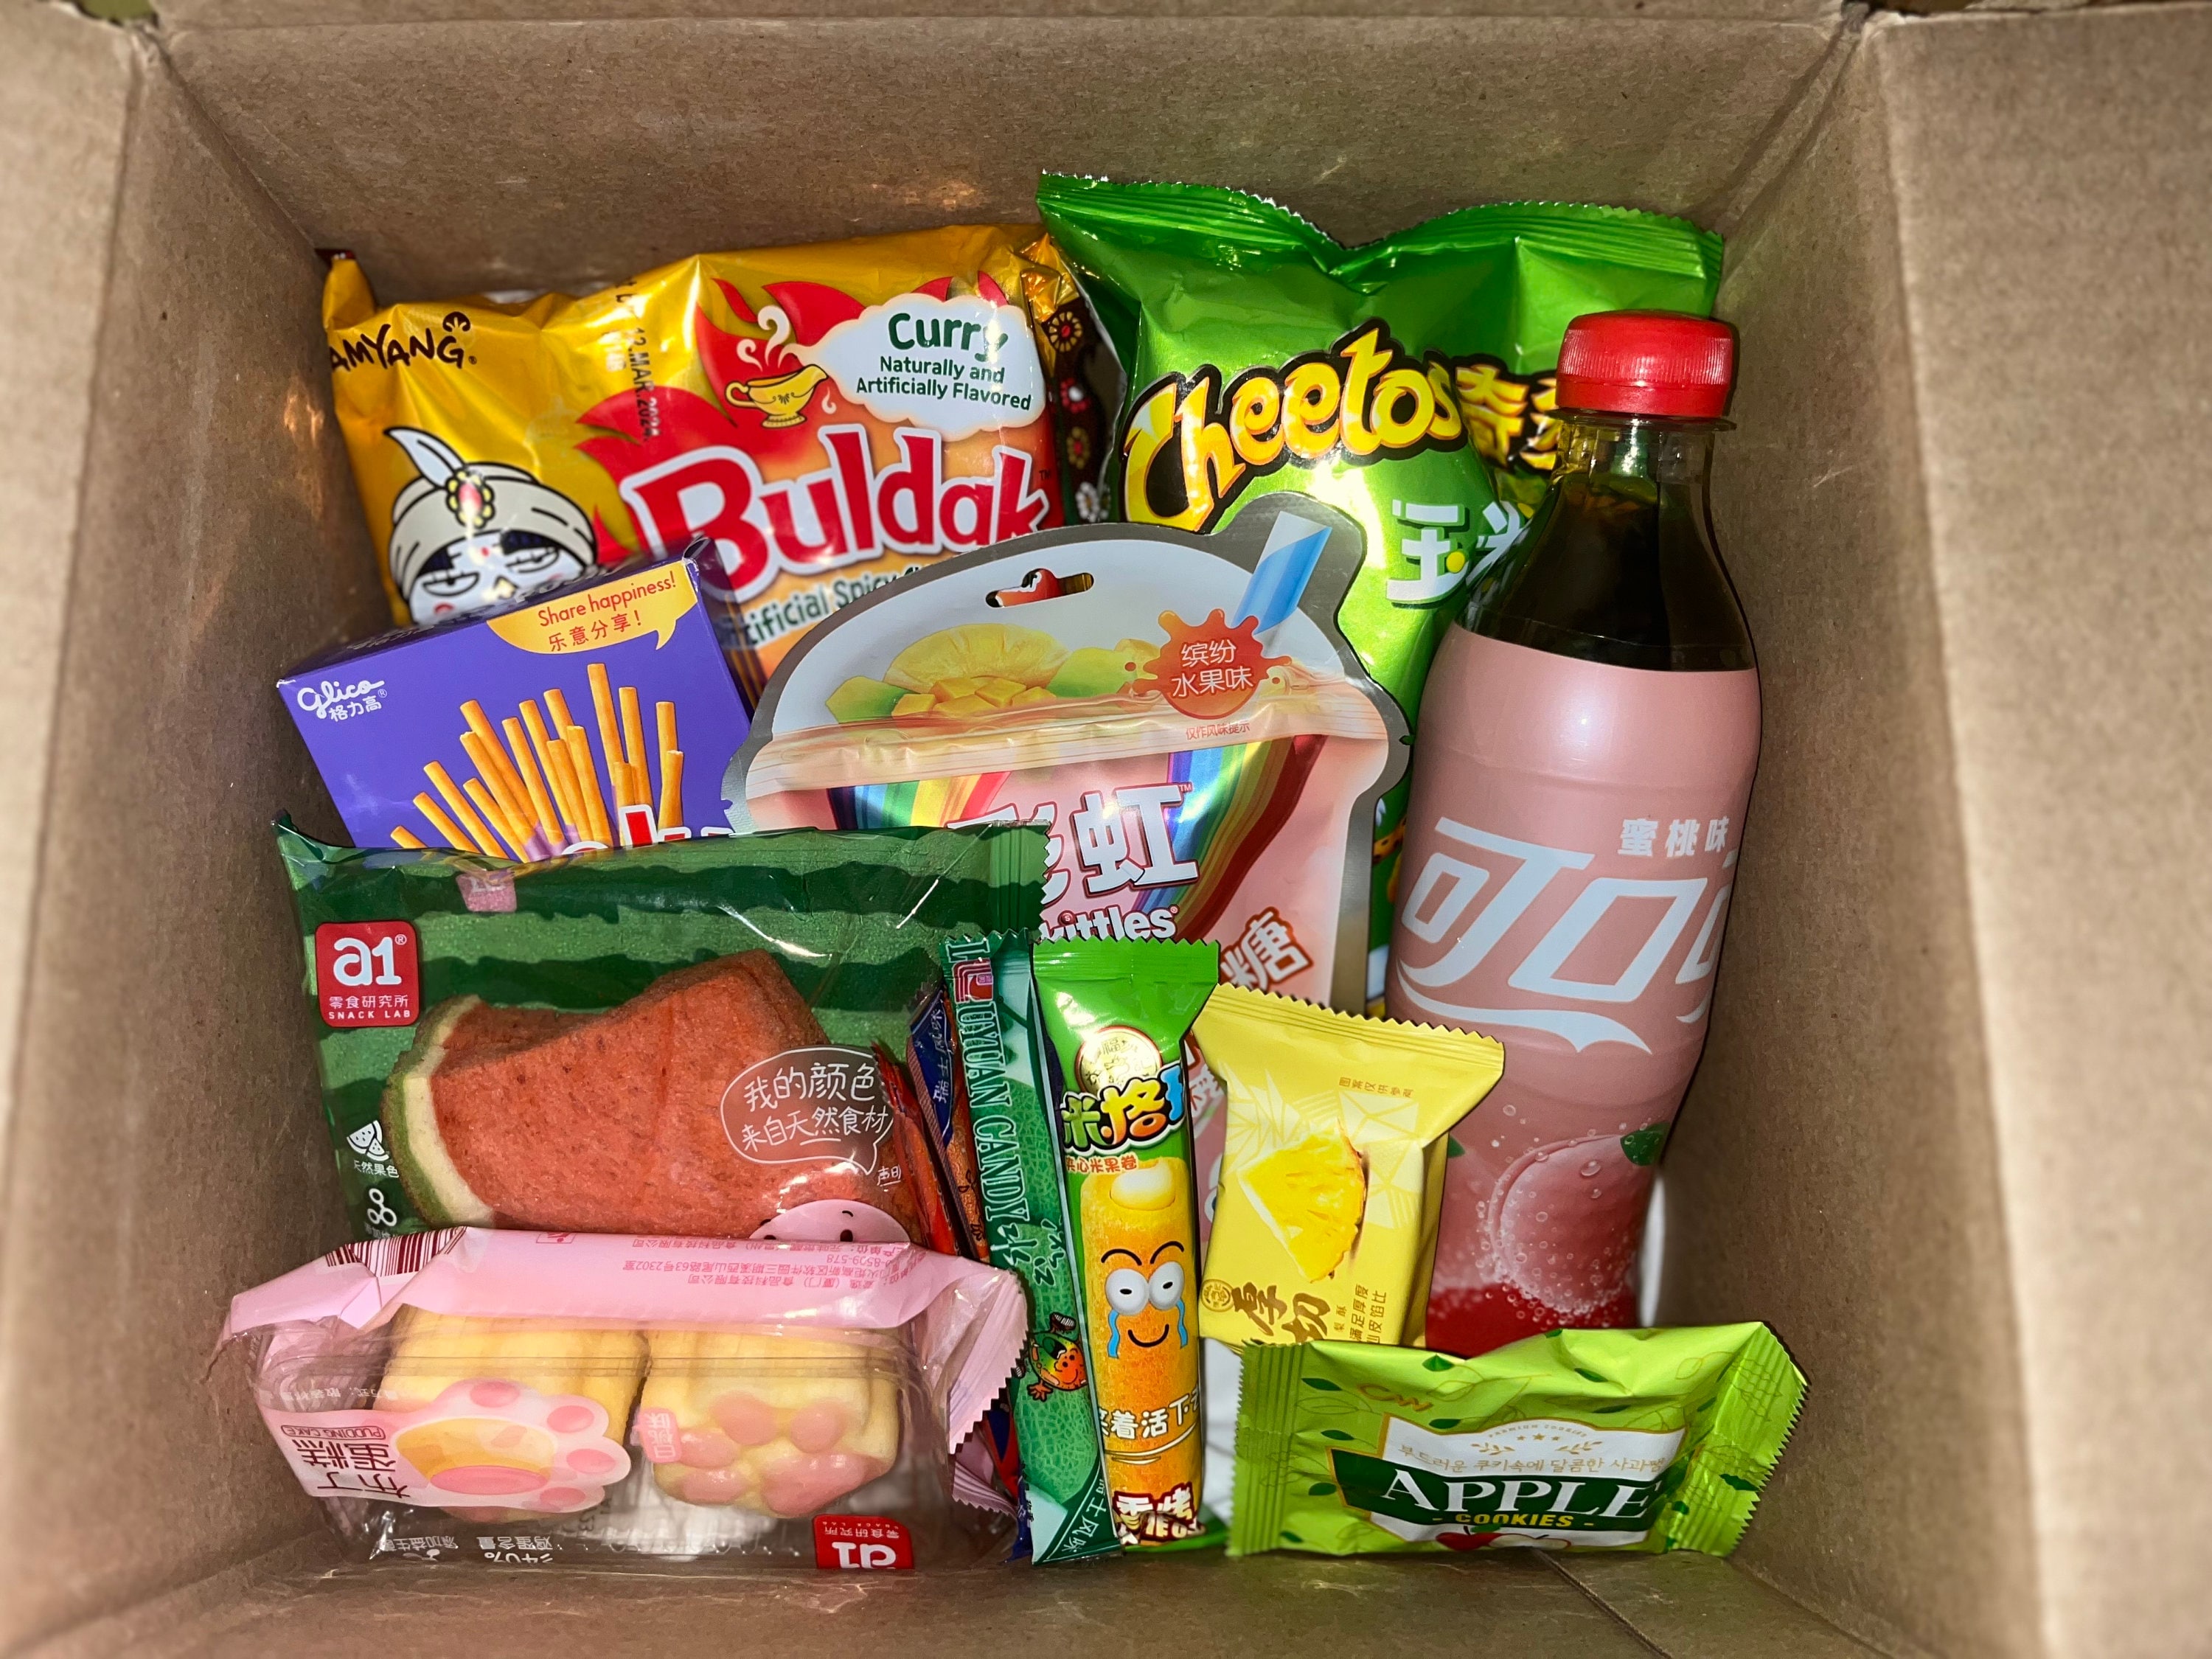 30 bonbons japonais Snacks Box Japonais Dagashi (boîte en carton